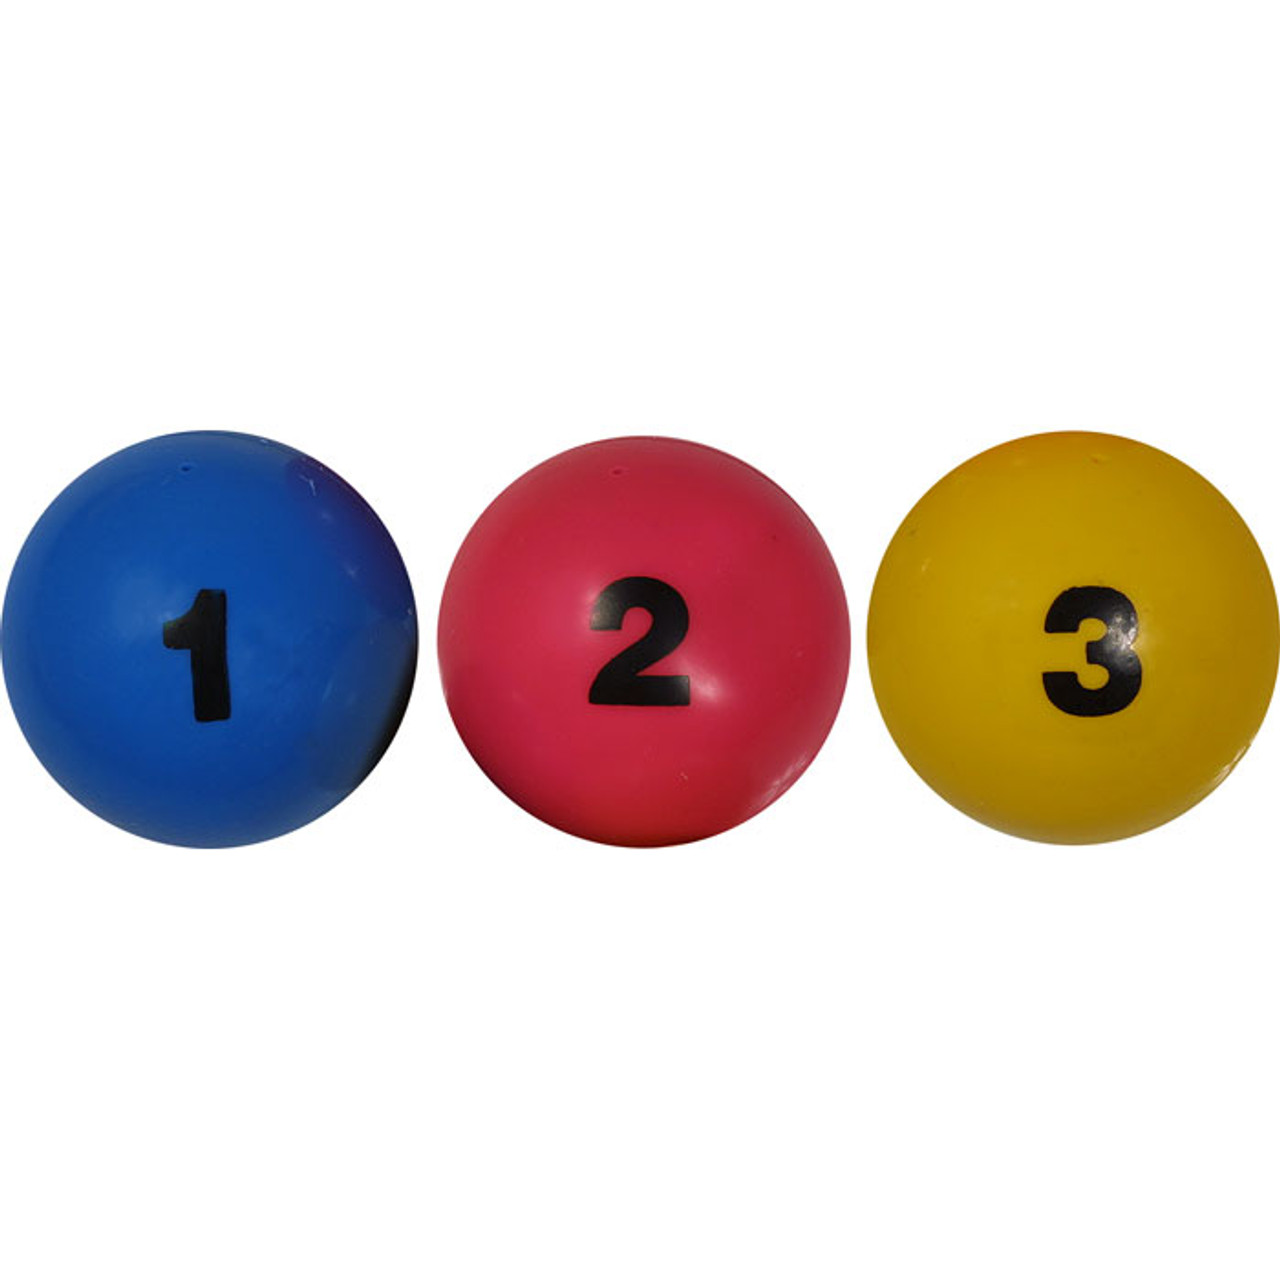 Buy Set of Numbered Juggling Balls Online